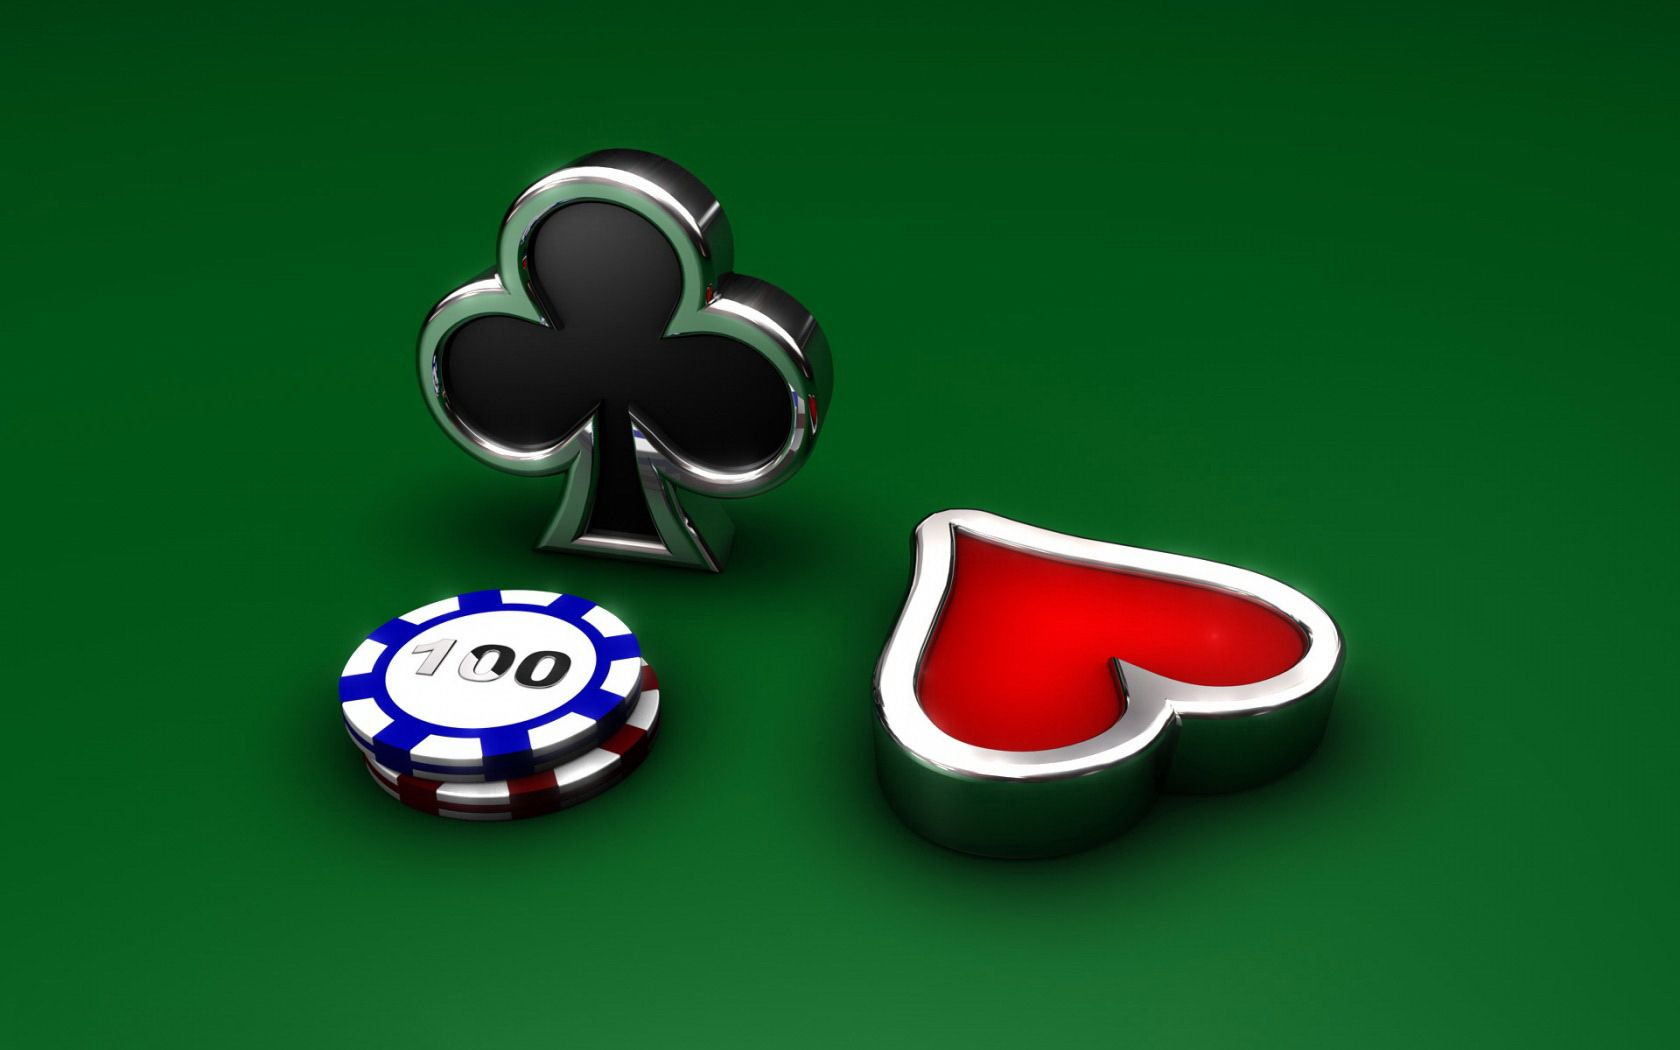 Casino Computer Wallpapers, Desktop Backgrounds | 1680x1050 | ID ...